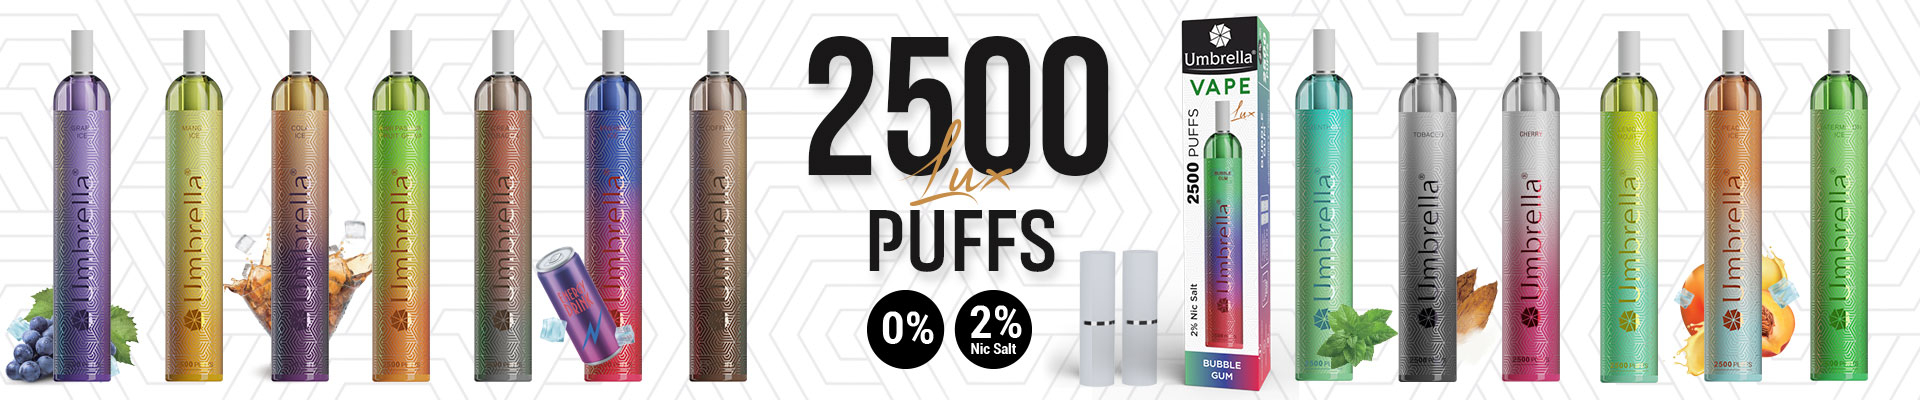 Vape 2500 PUFFS LUX - Umbrella